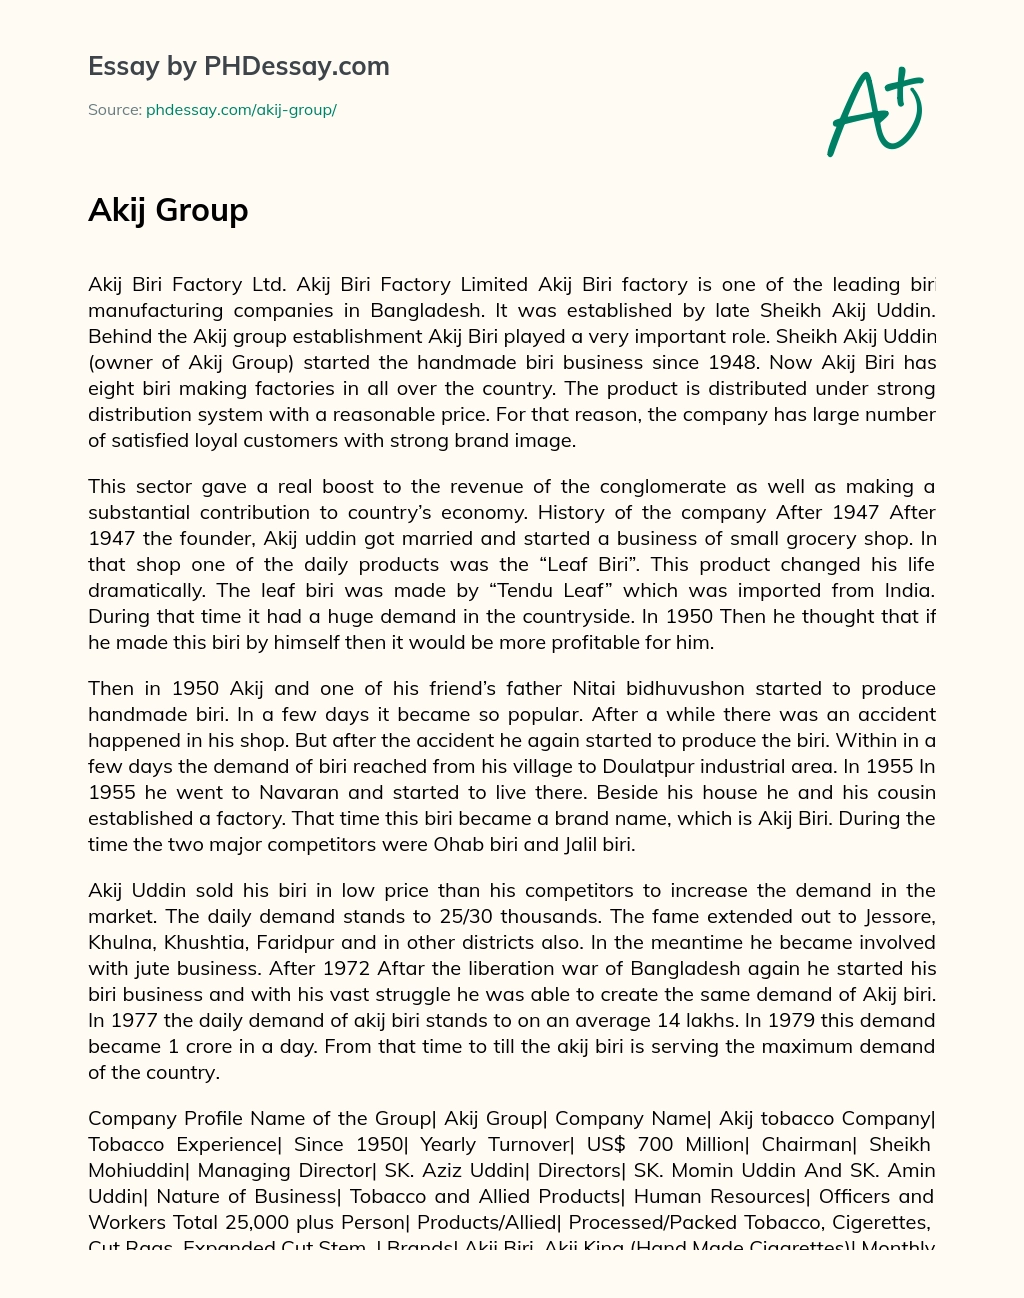 Akij Group essay